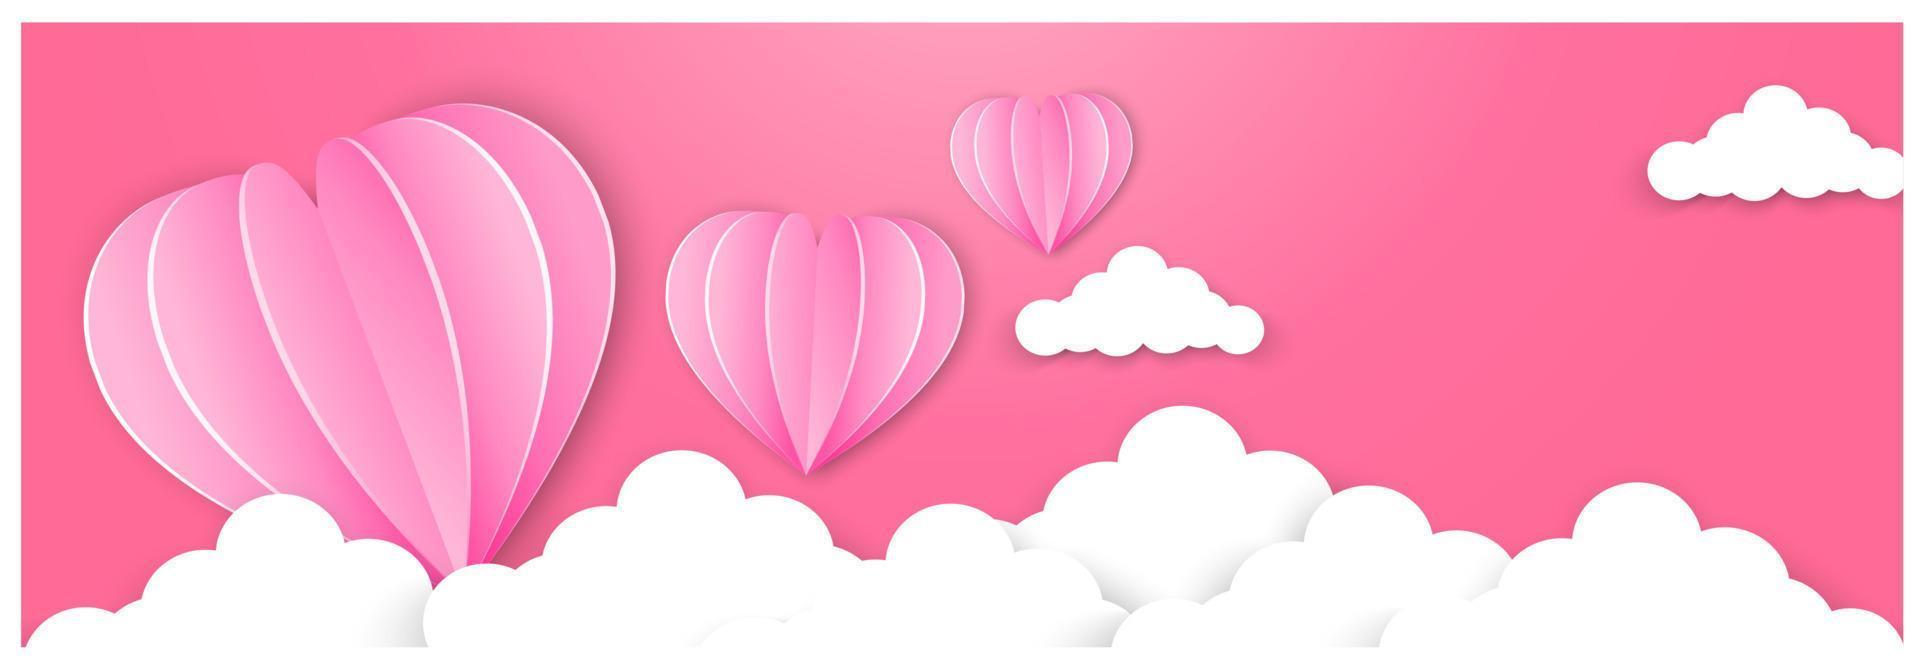 Lycklig valentines dag typografi vektor design med papper ballonger i de himmel röd rosa hjärta form skära vit moln vektor bild av kärlek